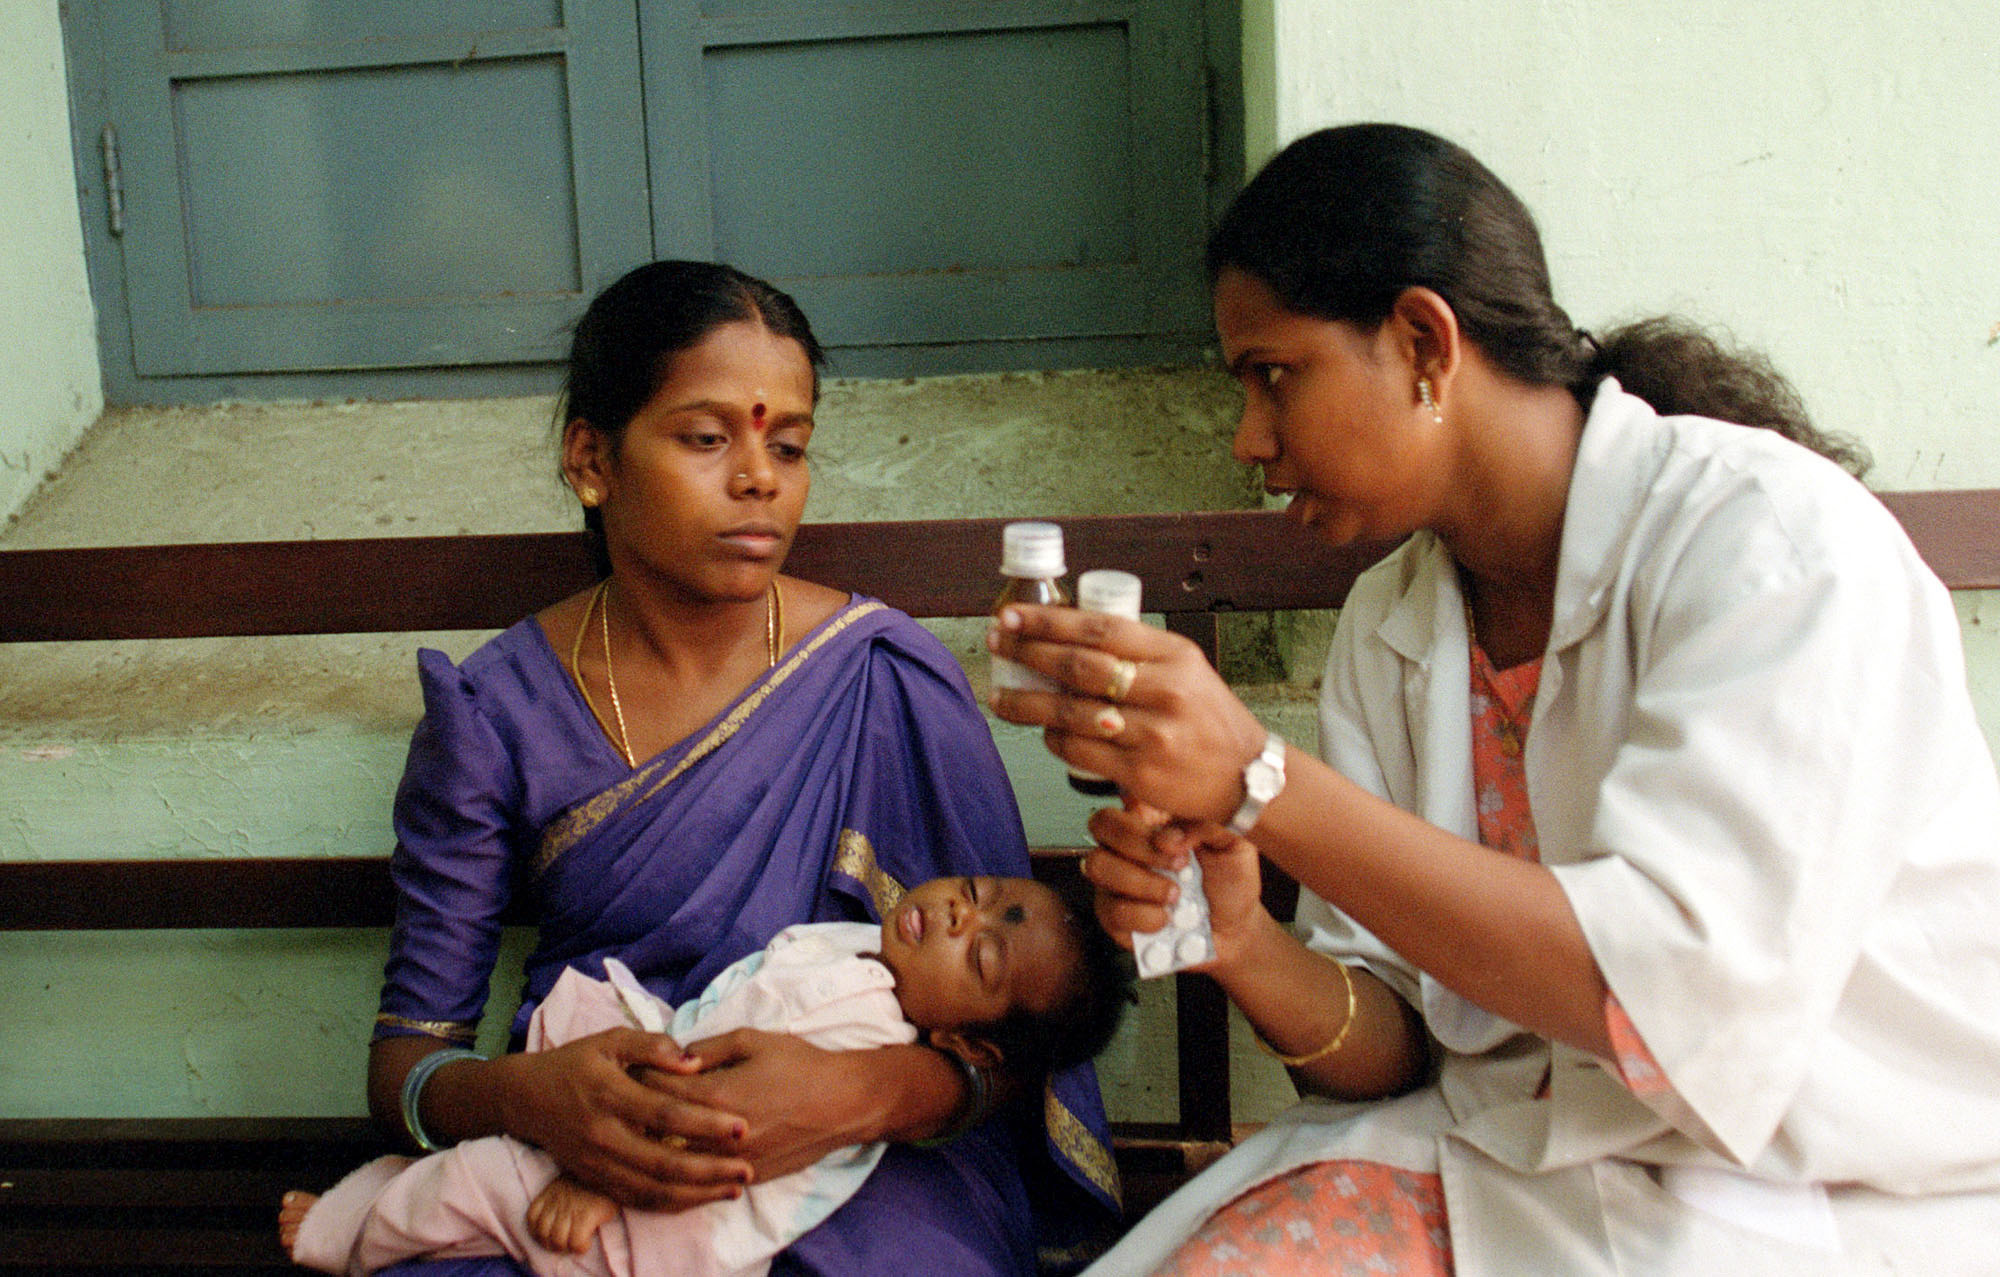 Mueren 60 niños en un hospital de India por falta de oxígeno